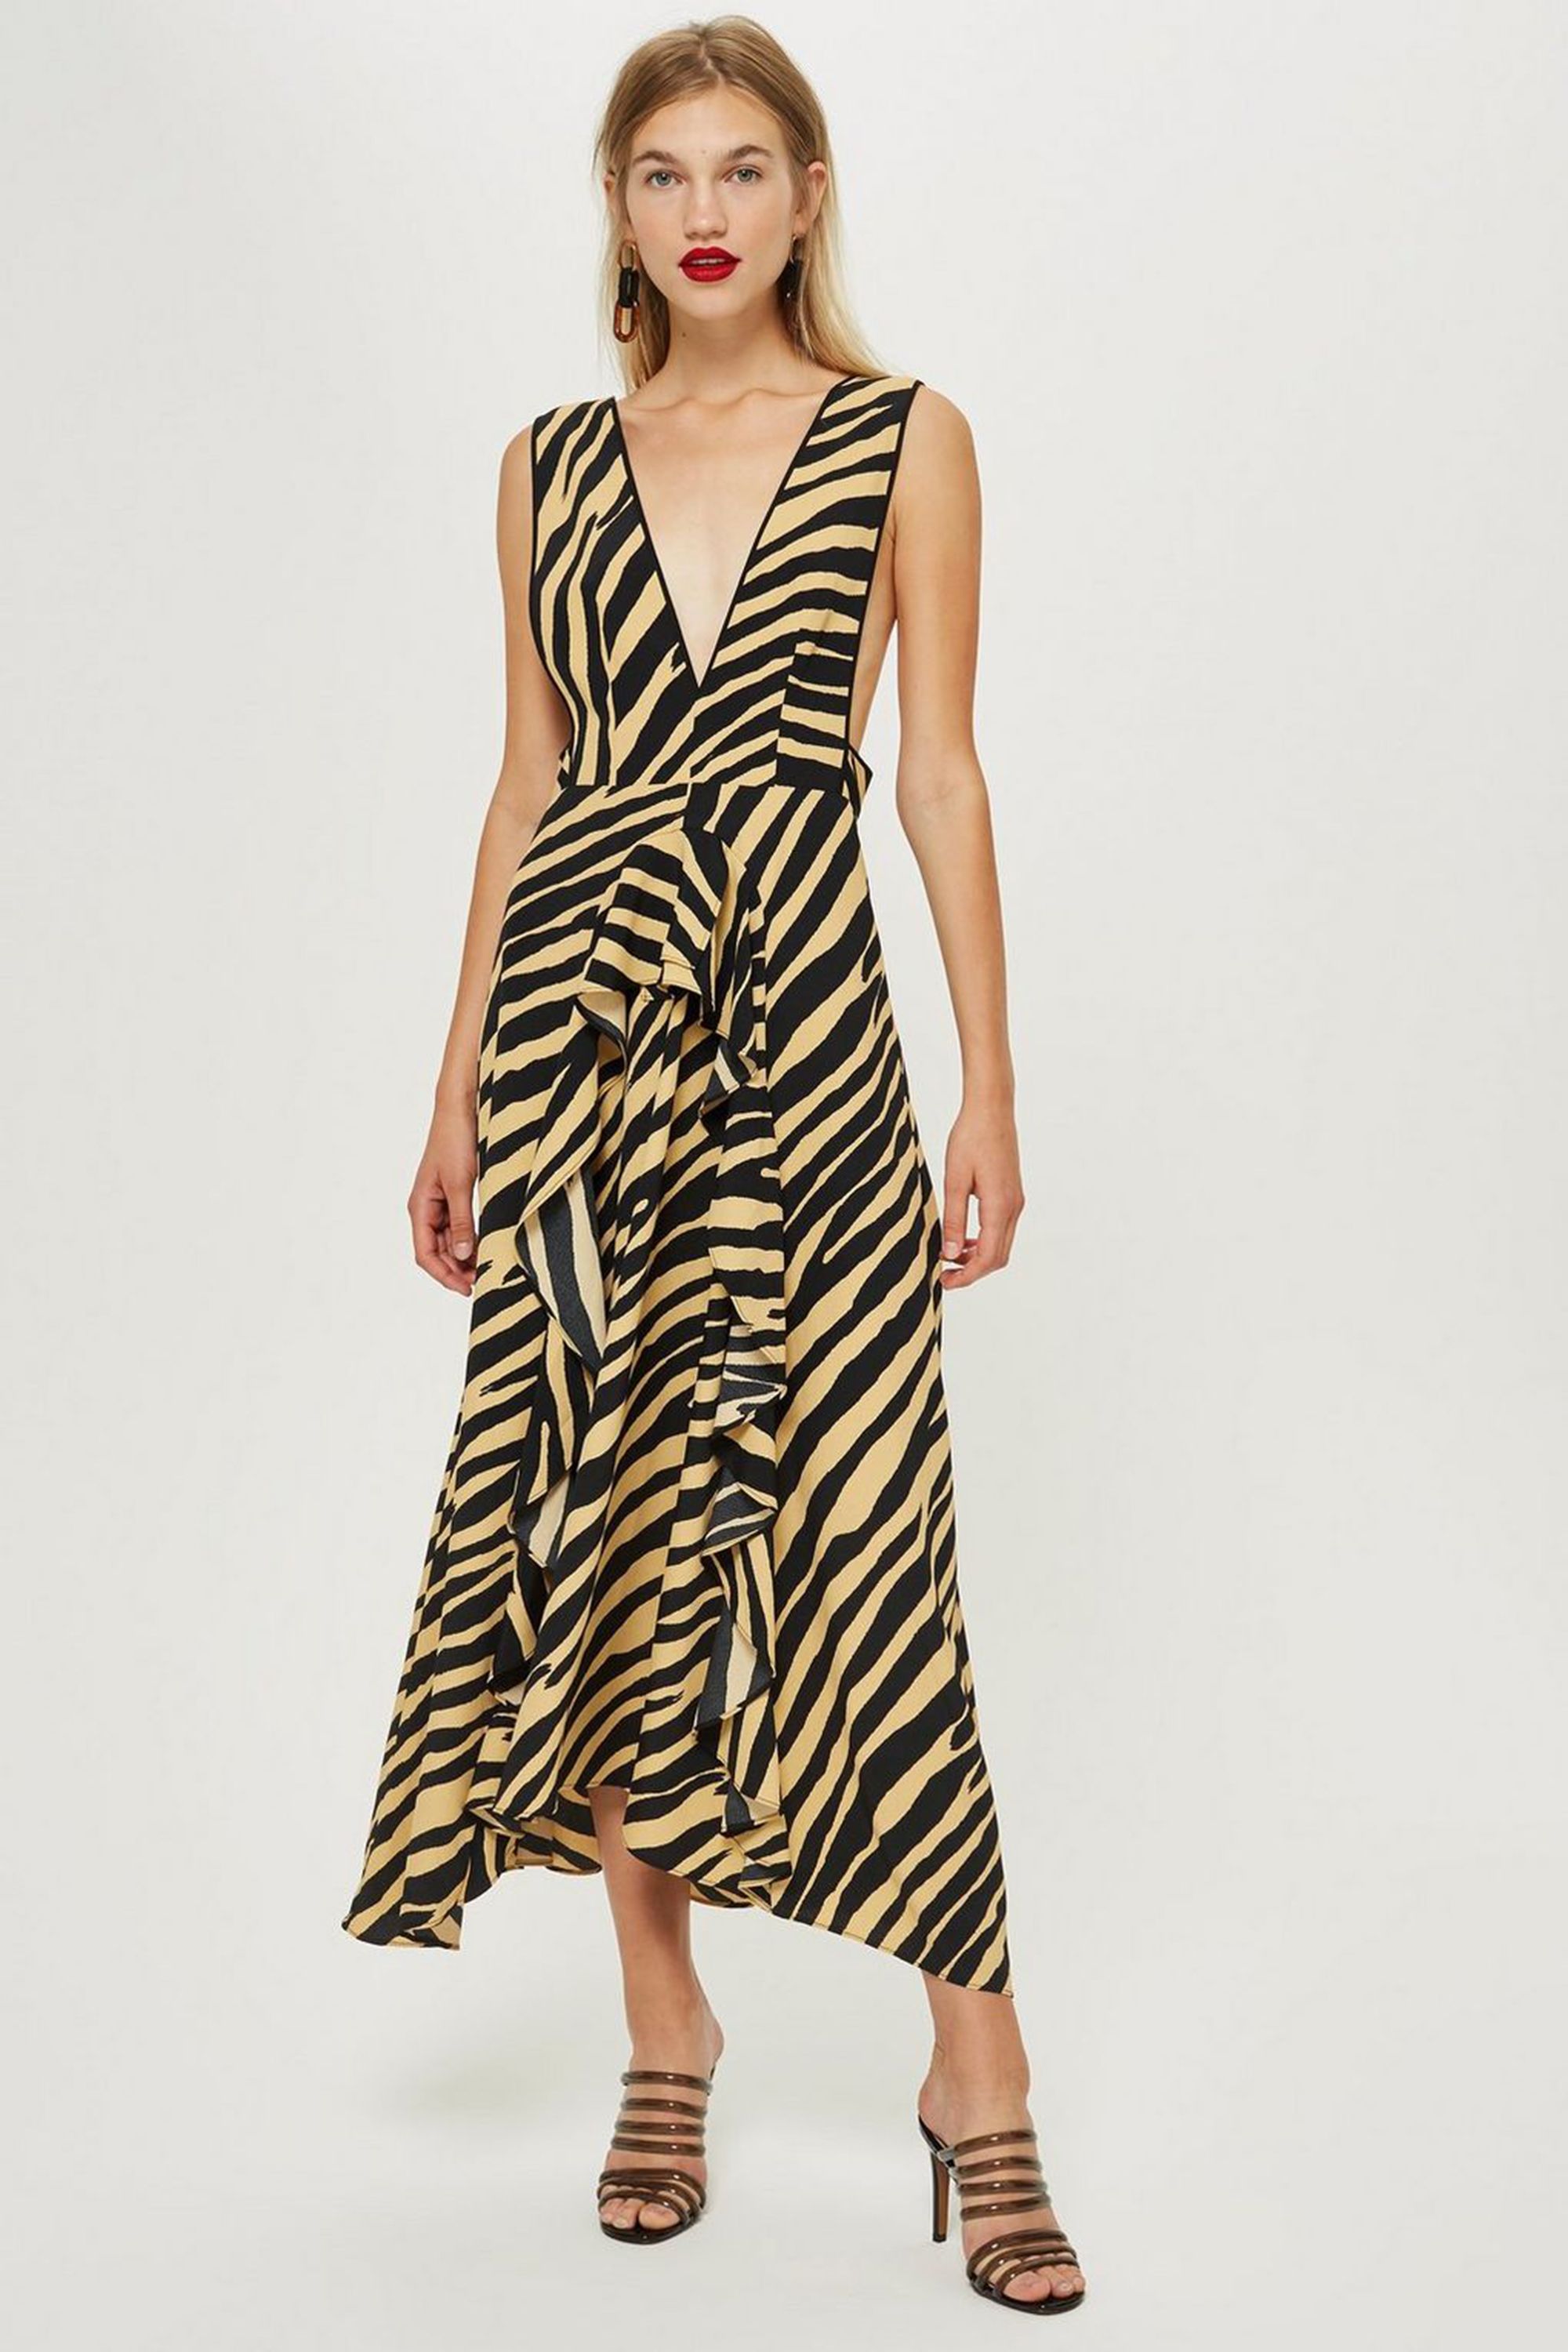 tiger print topshop dress